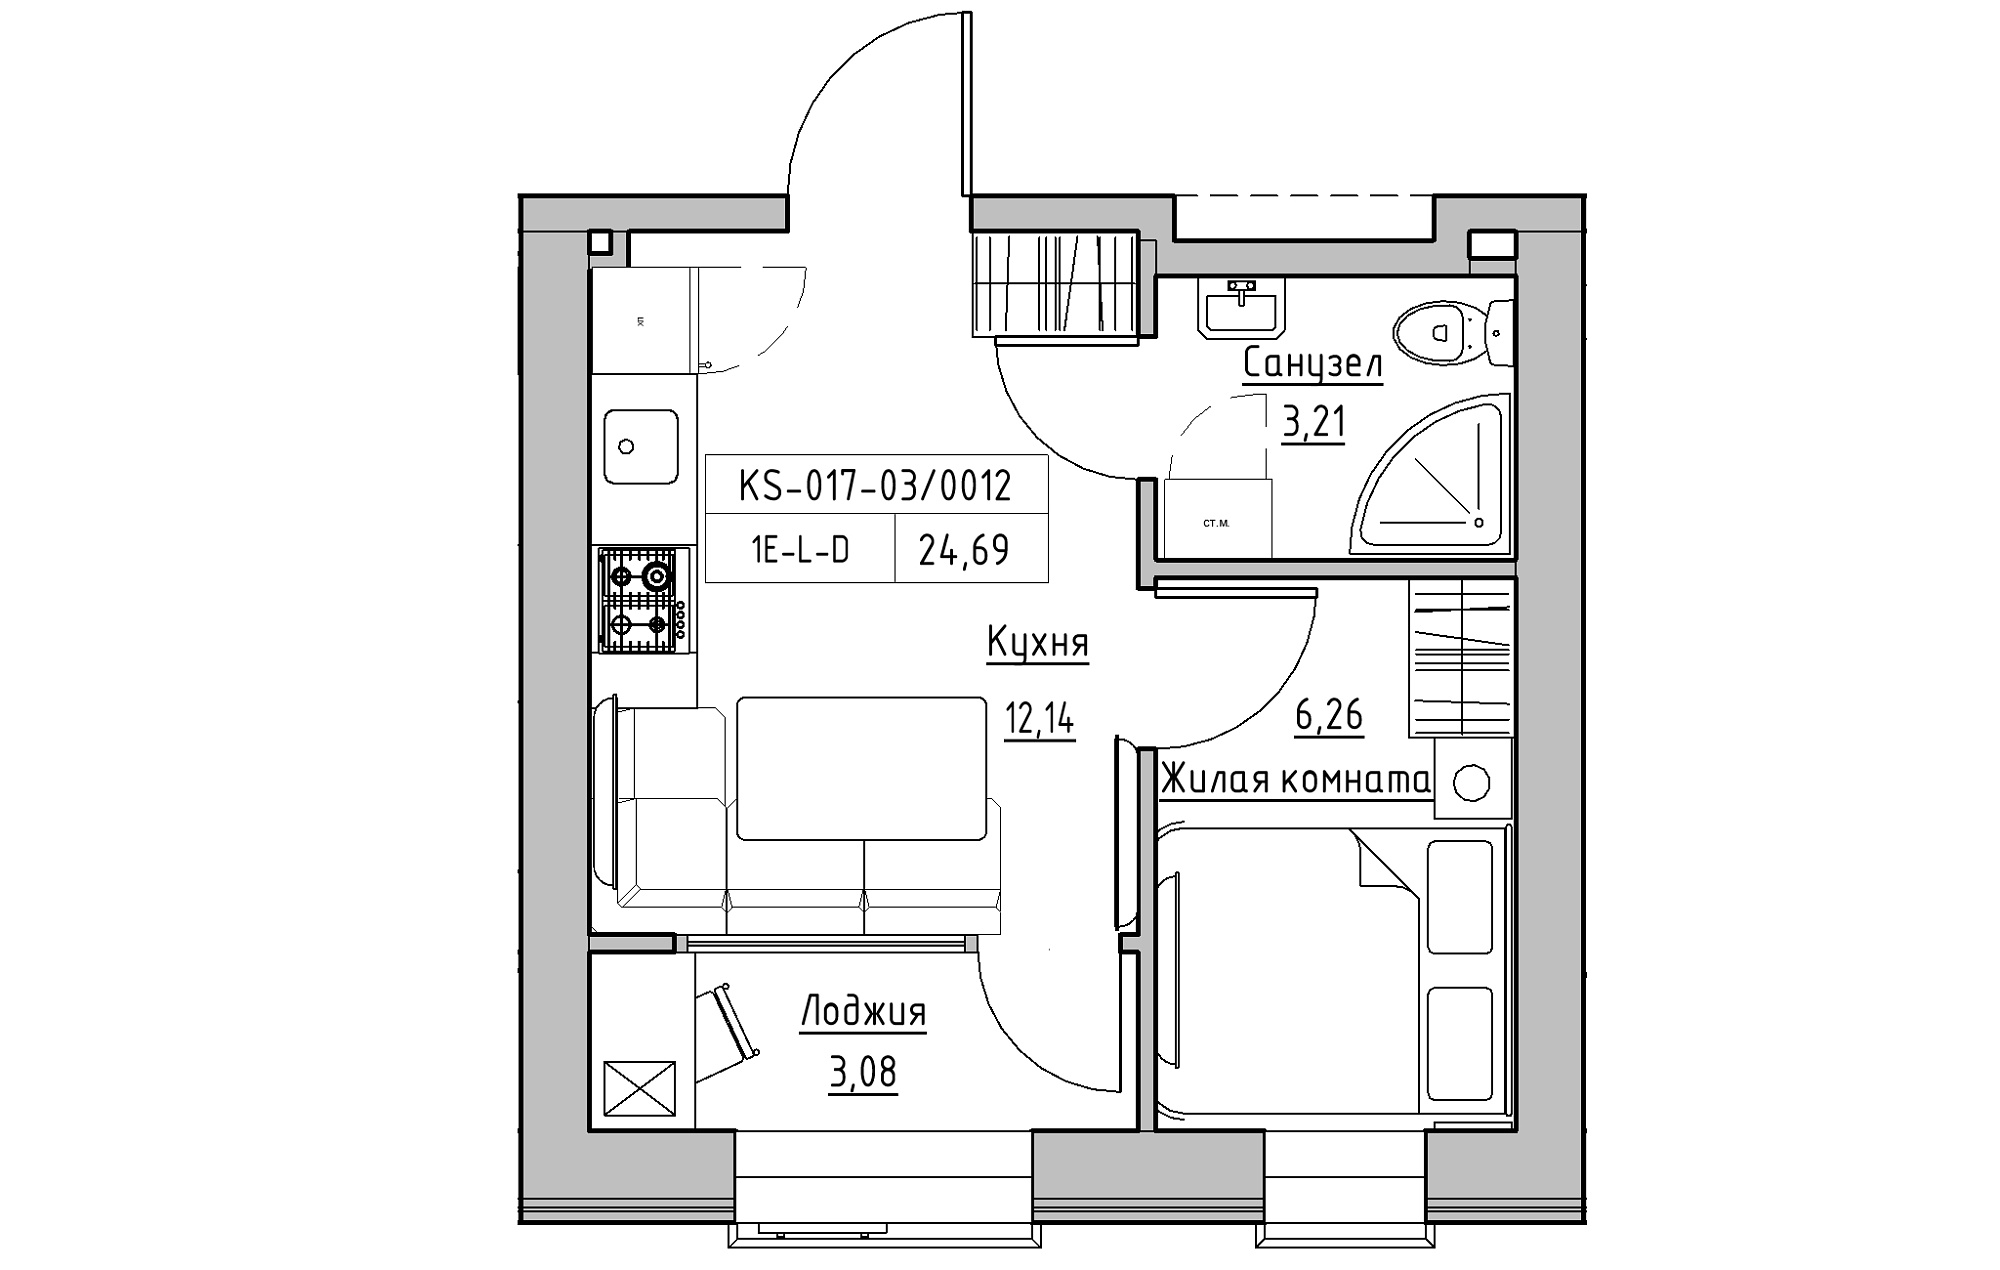 Планування 1-к квартира площею 24.69м2, KS-017-03/0012.